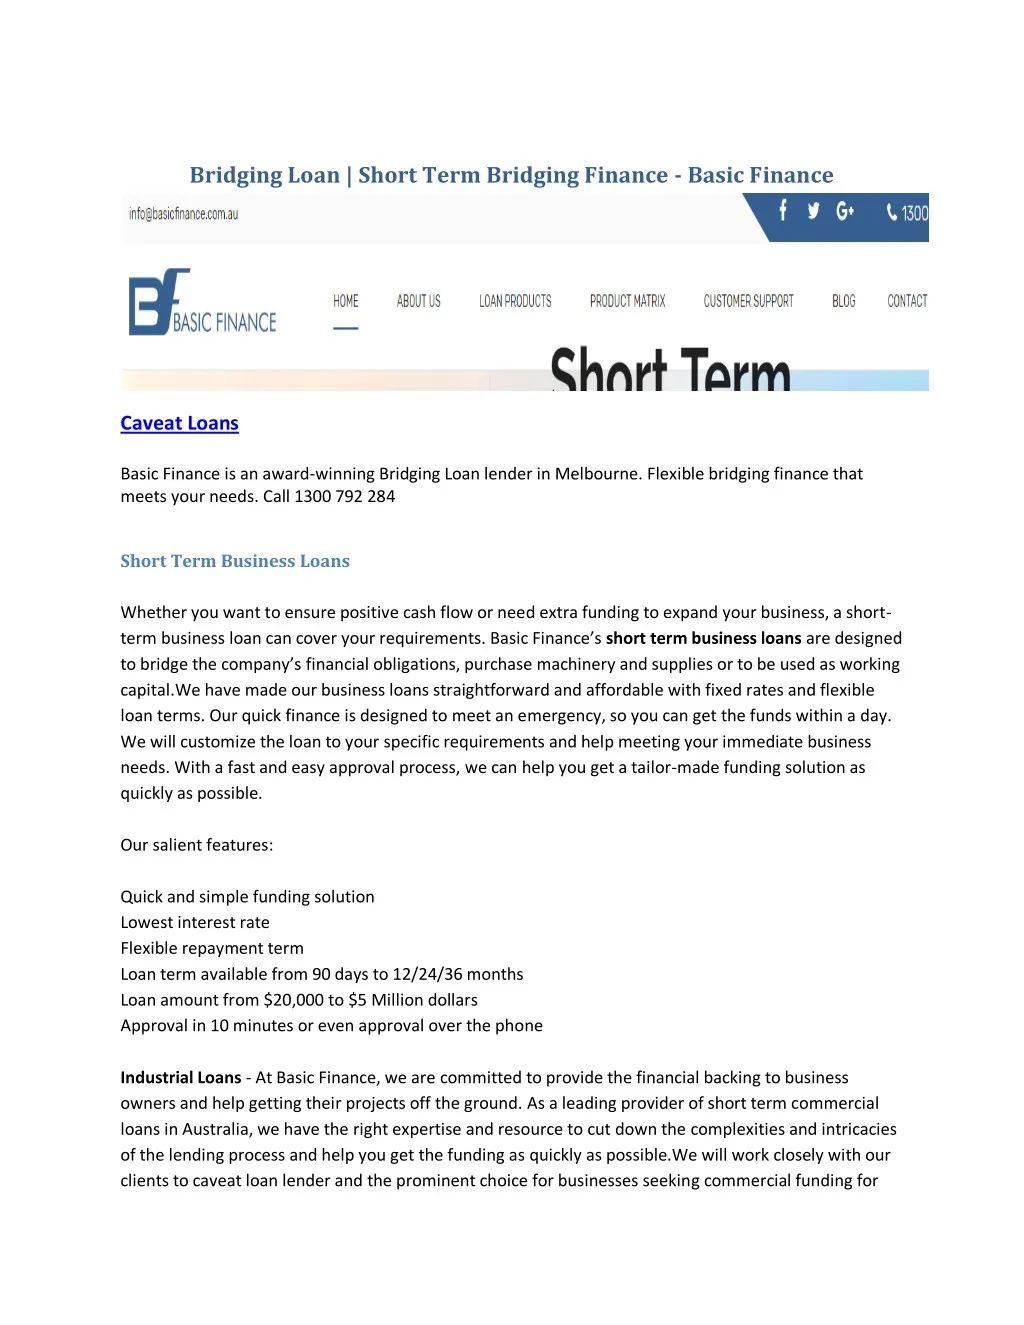 bridging loan short term bridging finance basic